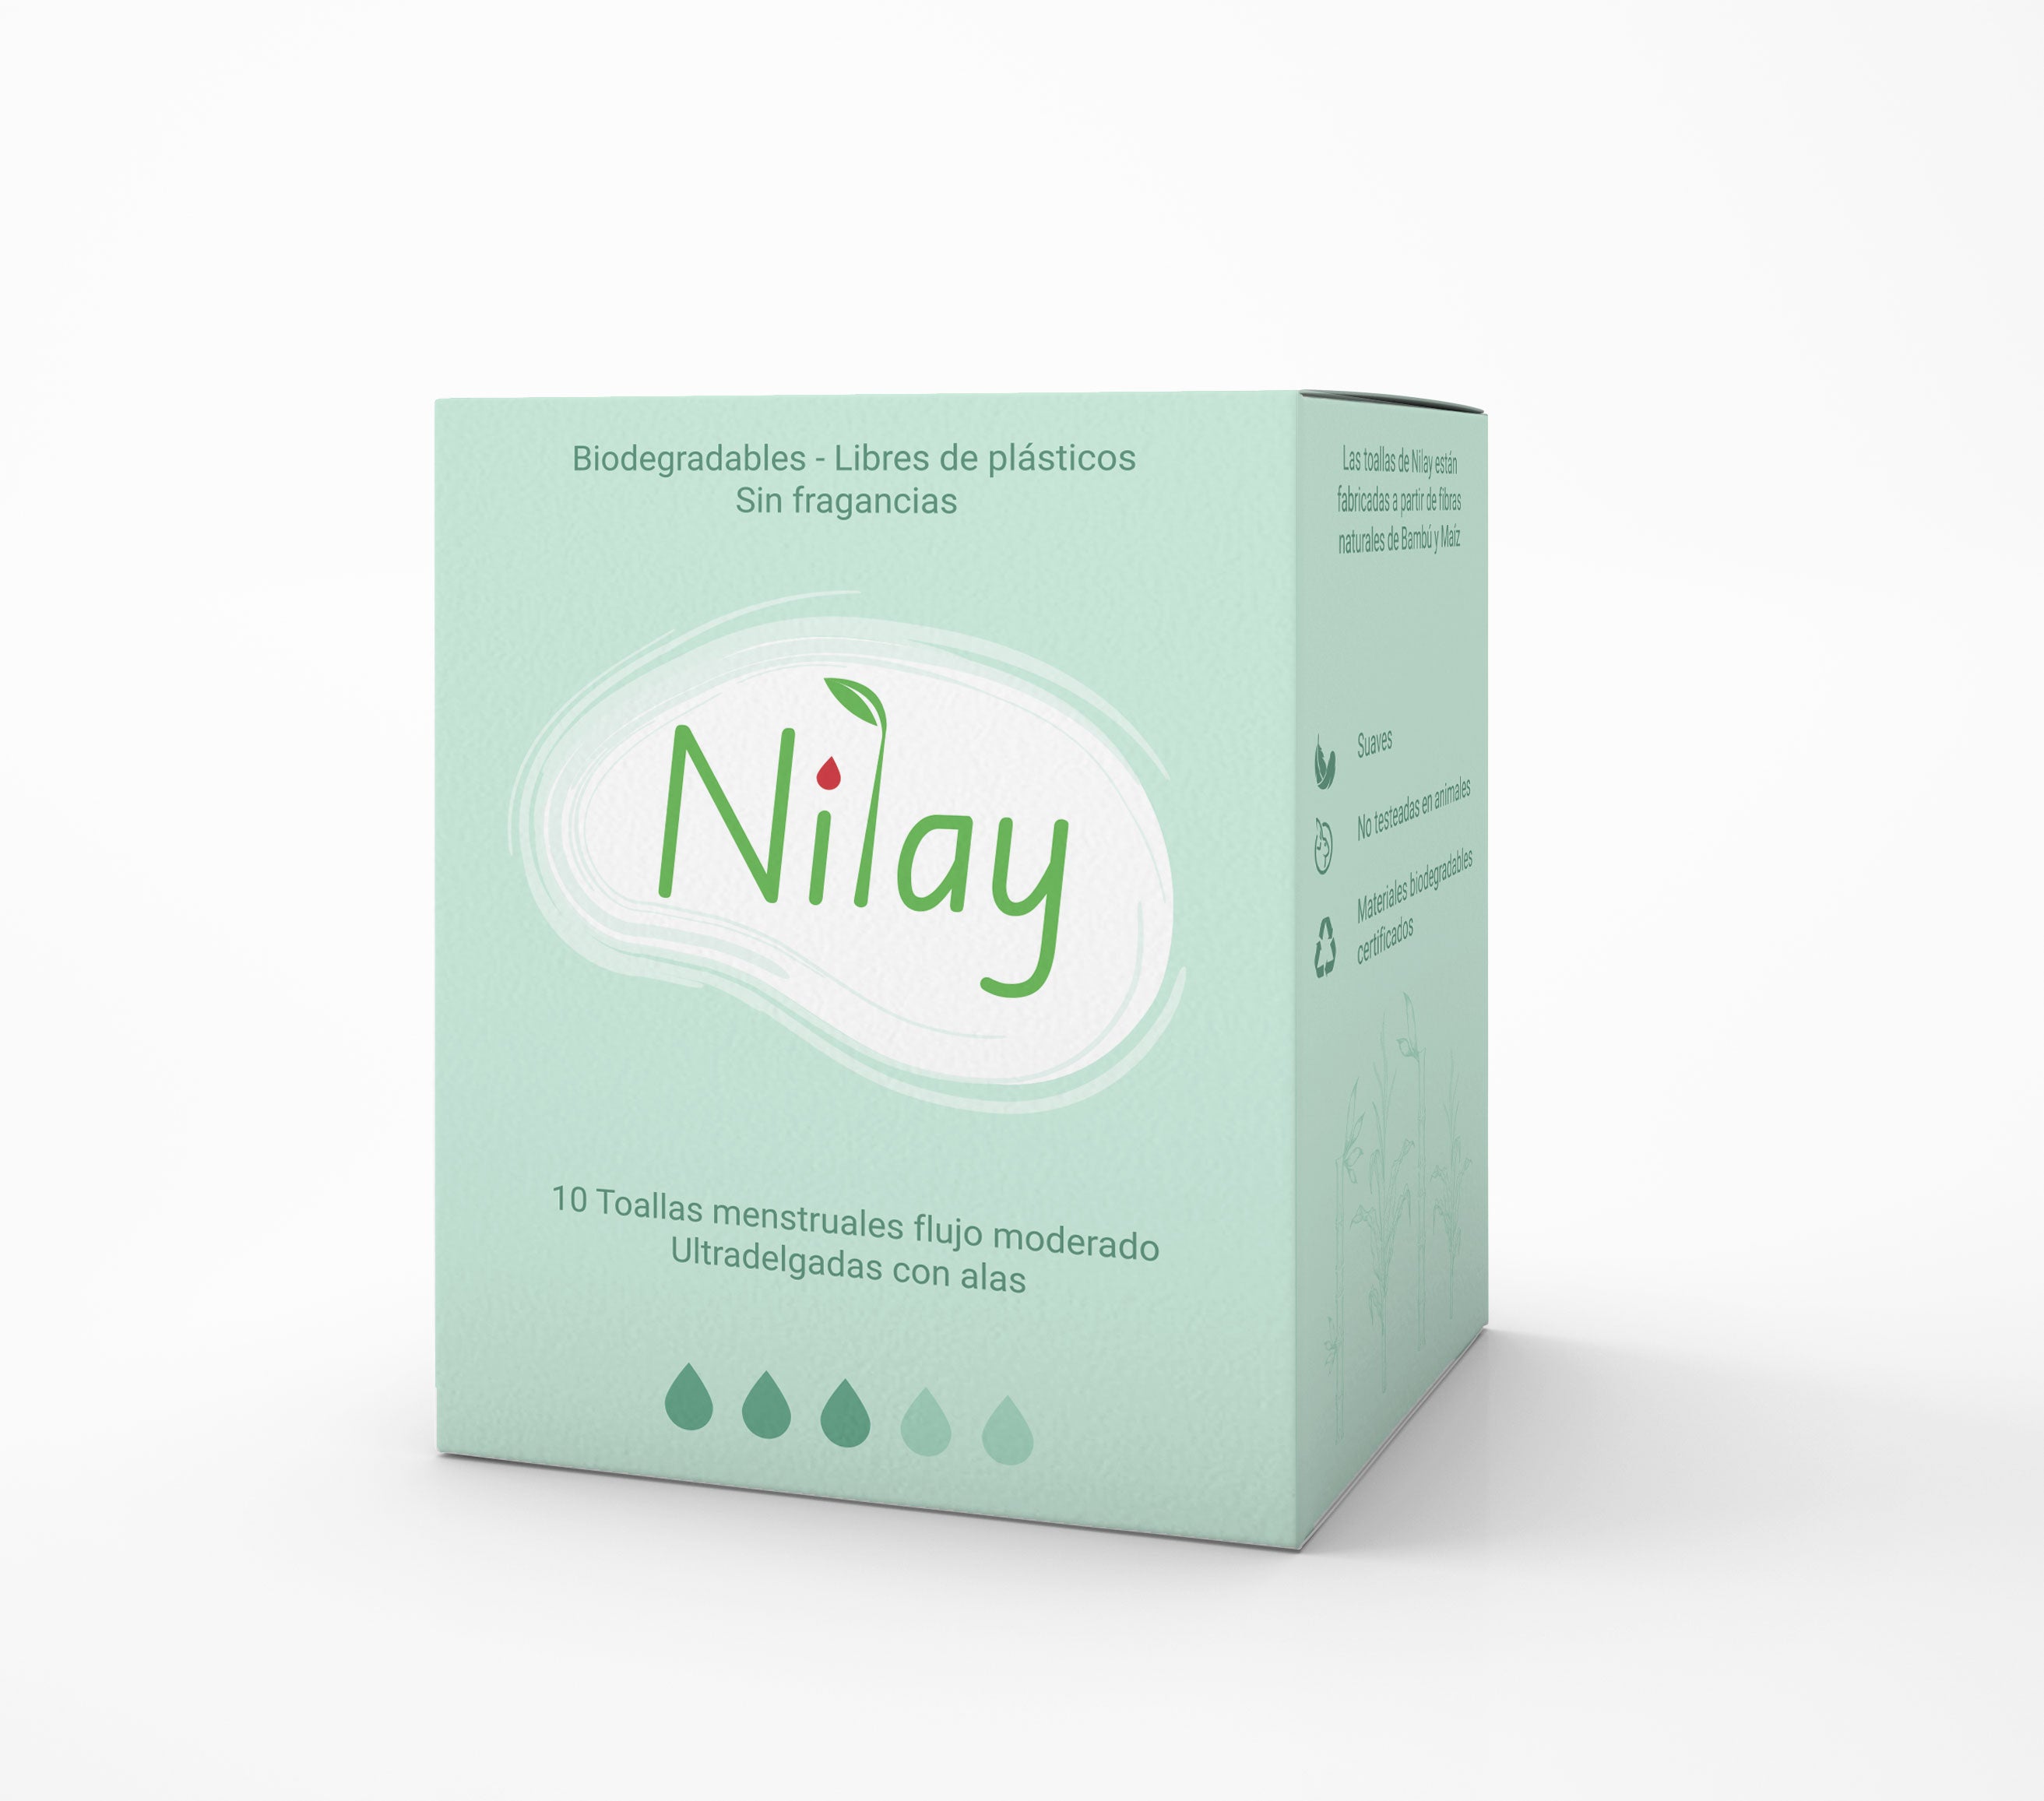 Toallita menstrual biodegradable ultra delgada con alas 10 un Nilay